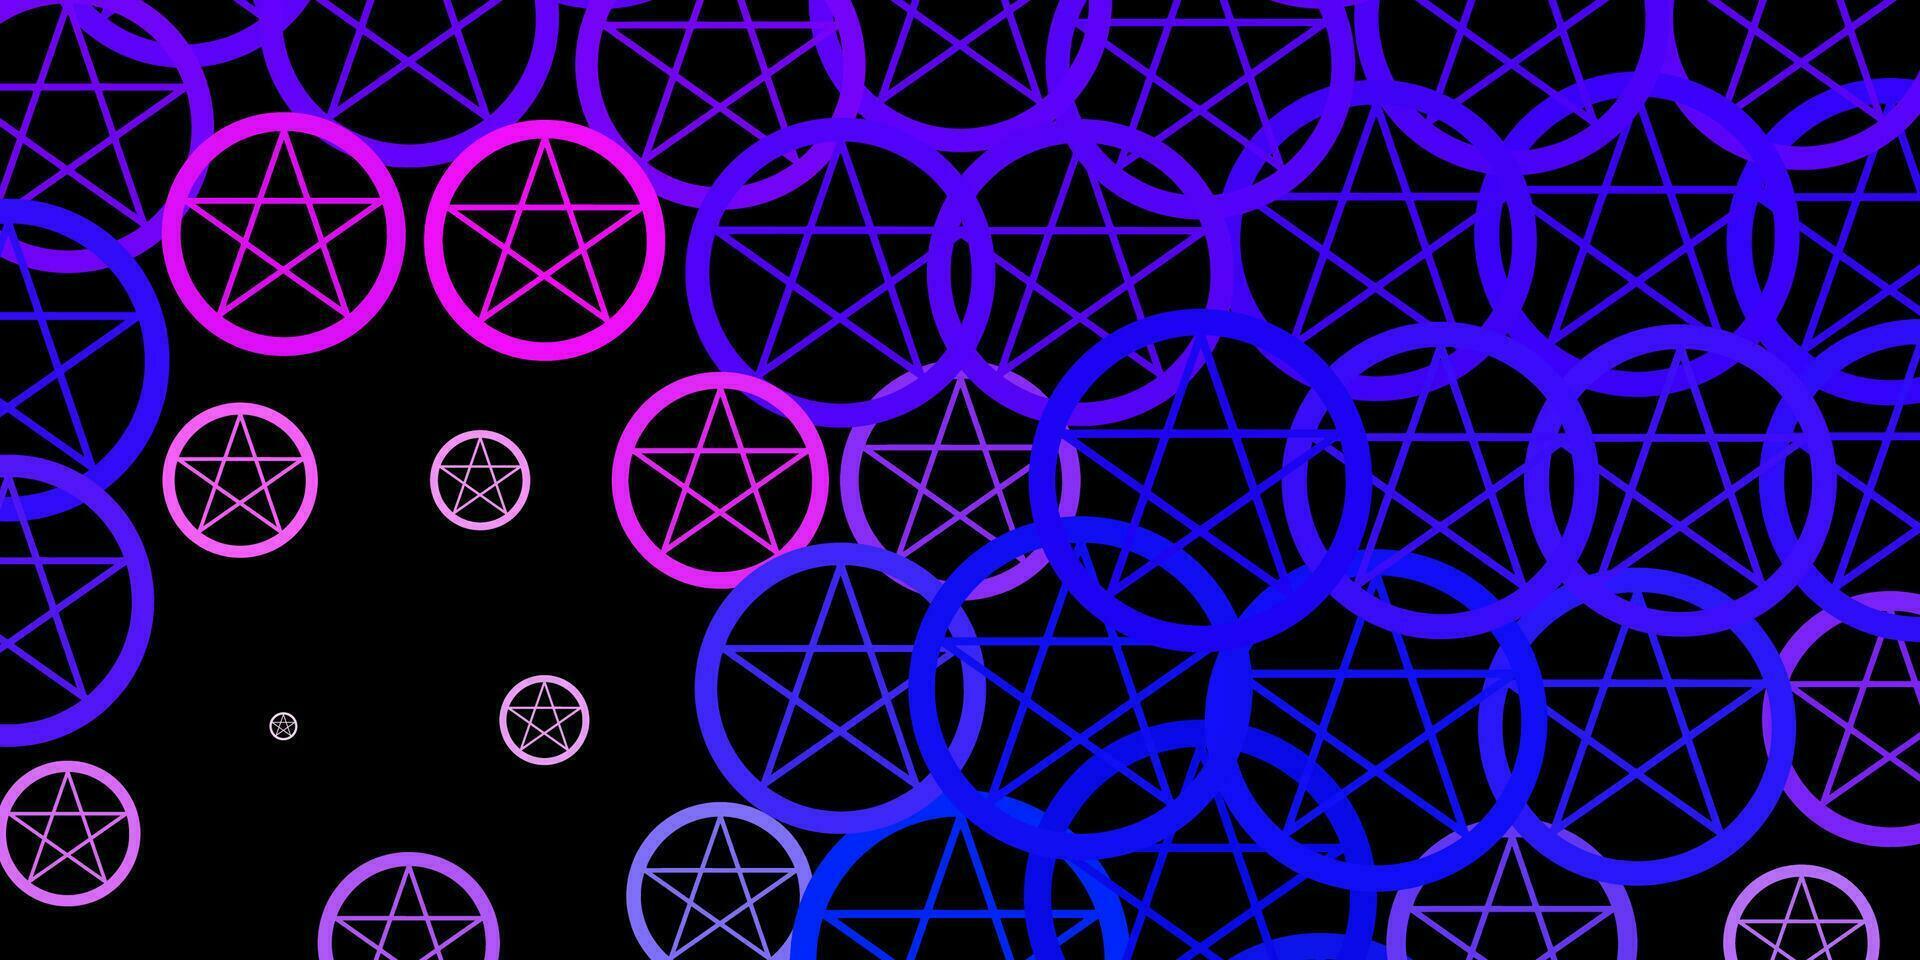 padrão de vetor rosa escuro, azul com elementos mágicos.